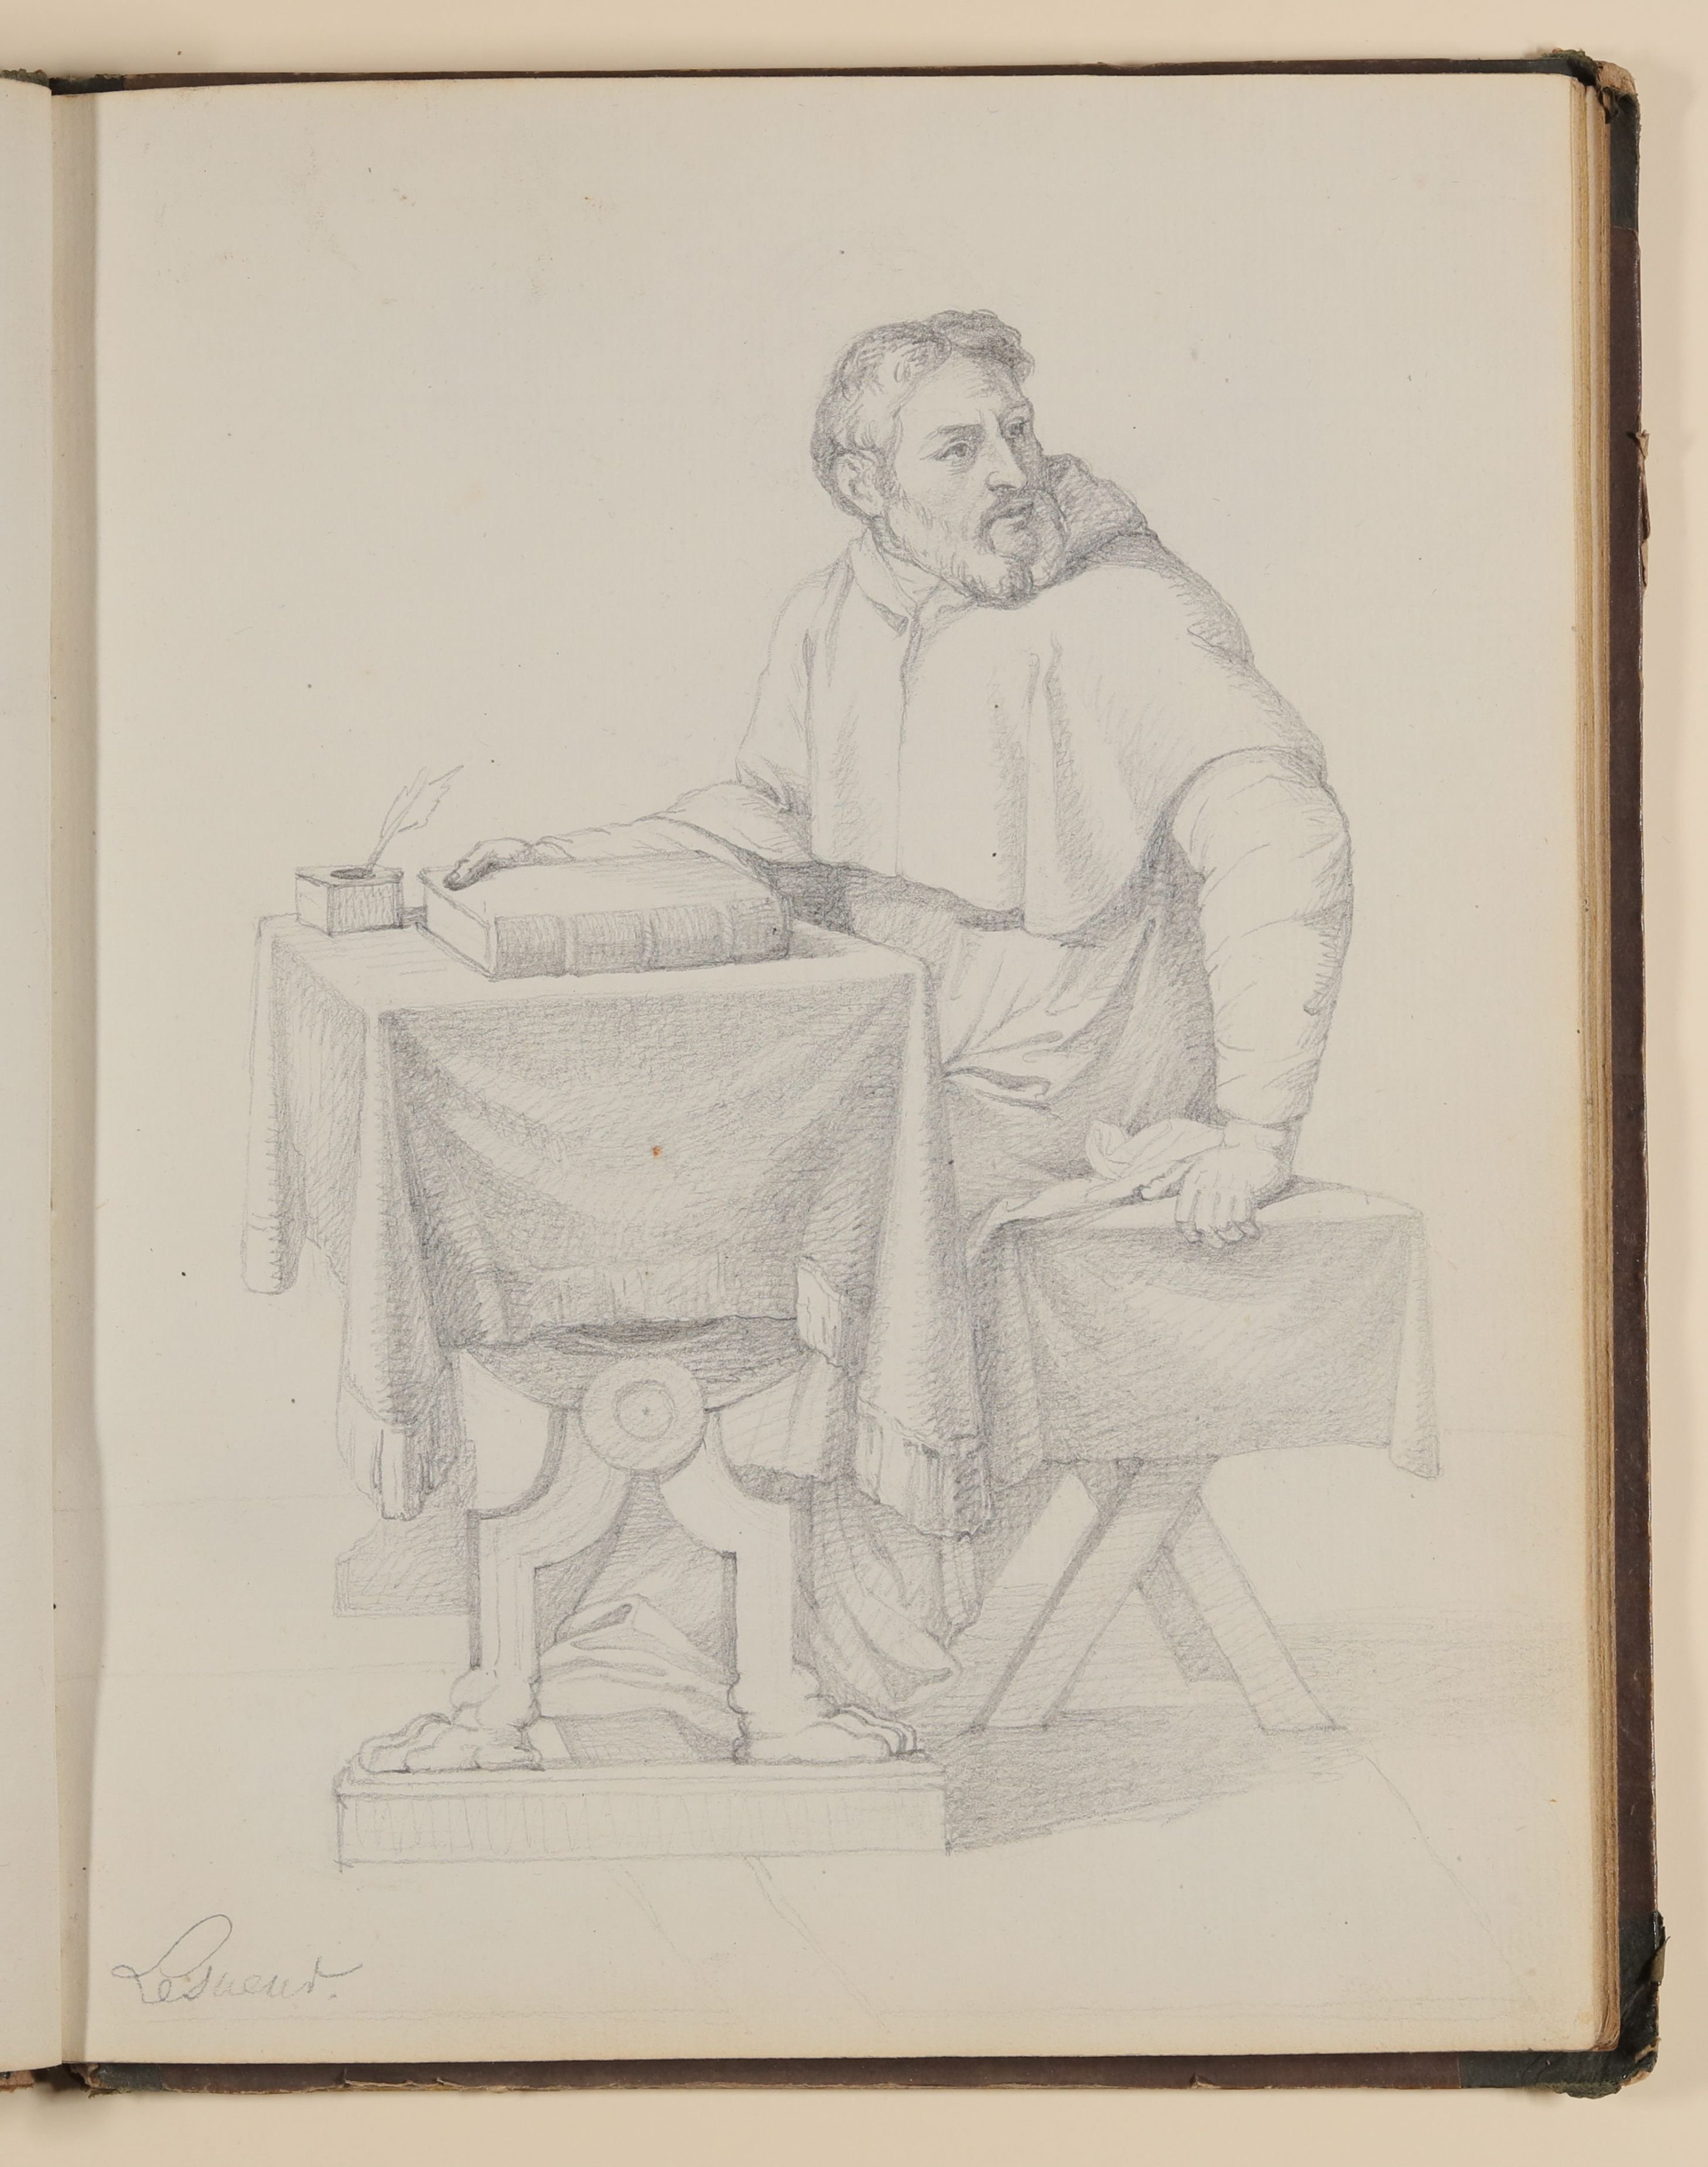 Mönch am Schreibpult sitzend, Kopie nach Eustache Le Sueur [aus einem Skizzenbuch von unbekannter Hand, evtl. des Louis Thomassin] (Freies Deutsches Hochstift / Frankfurter Goethe-Museum CC BY-NC-SA)